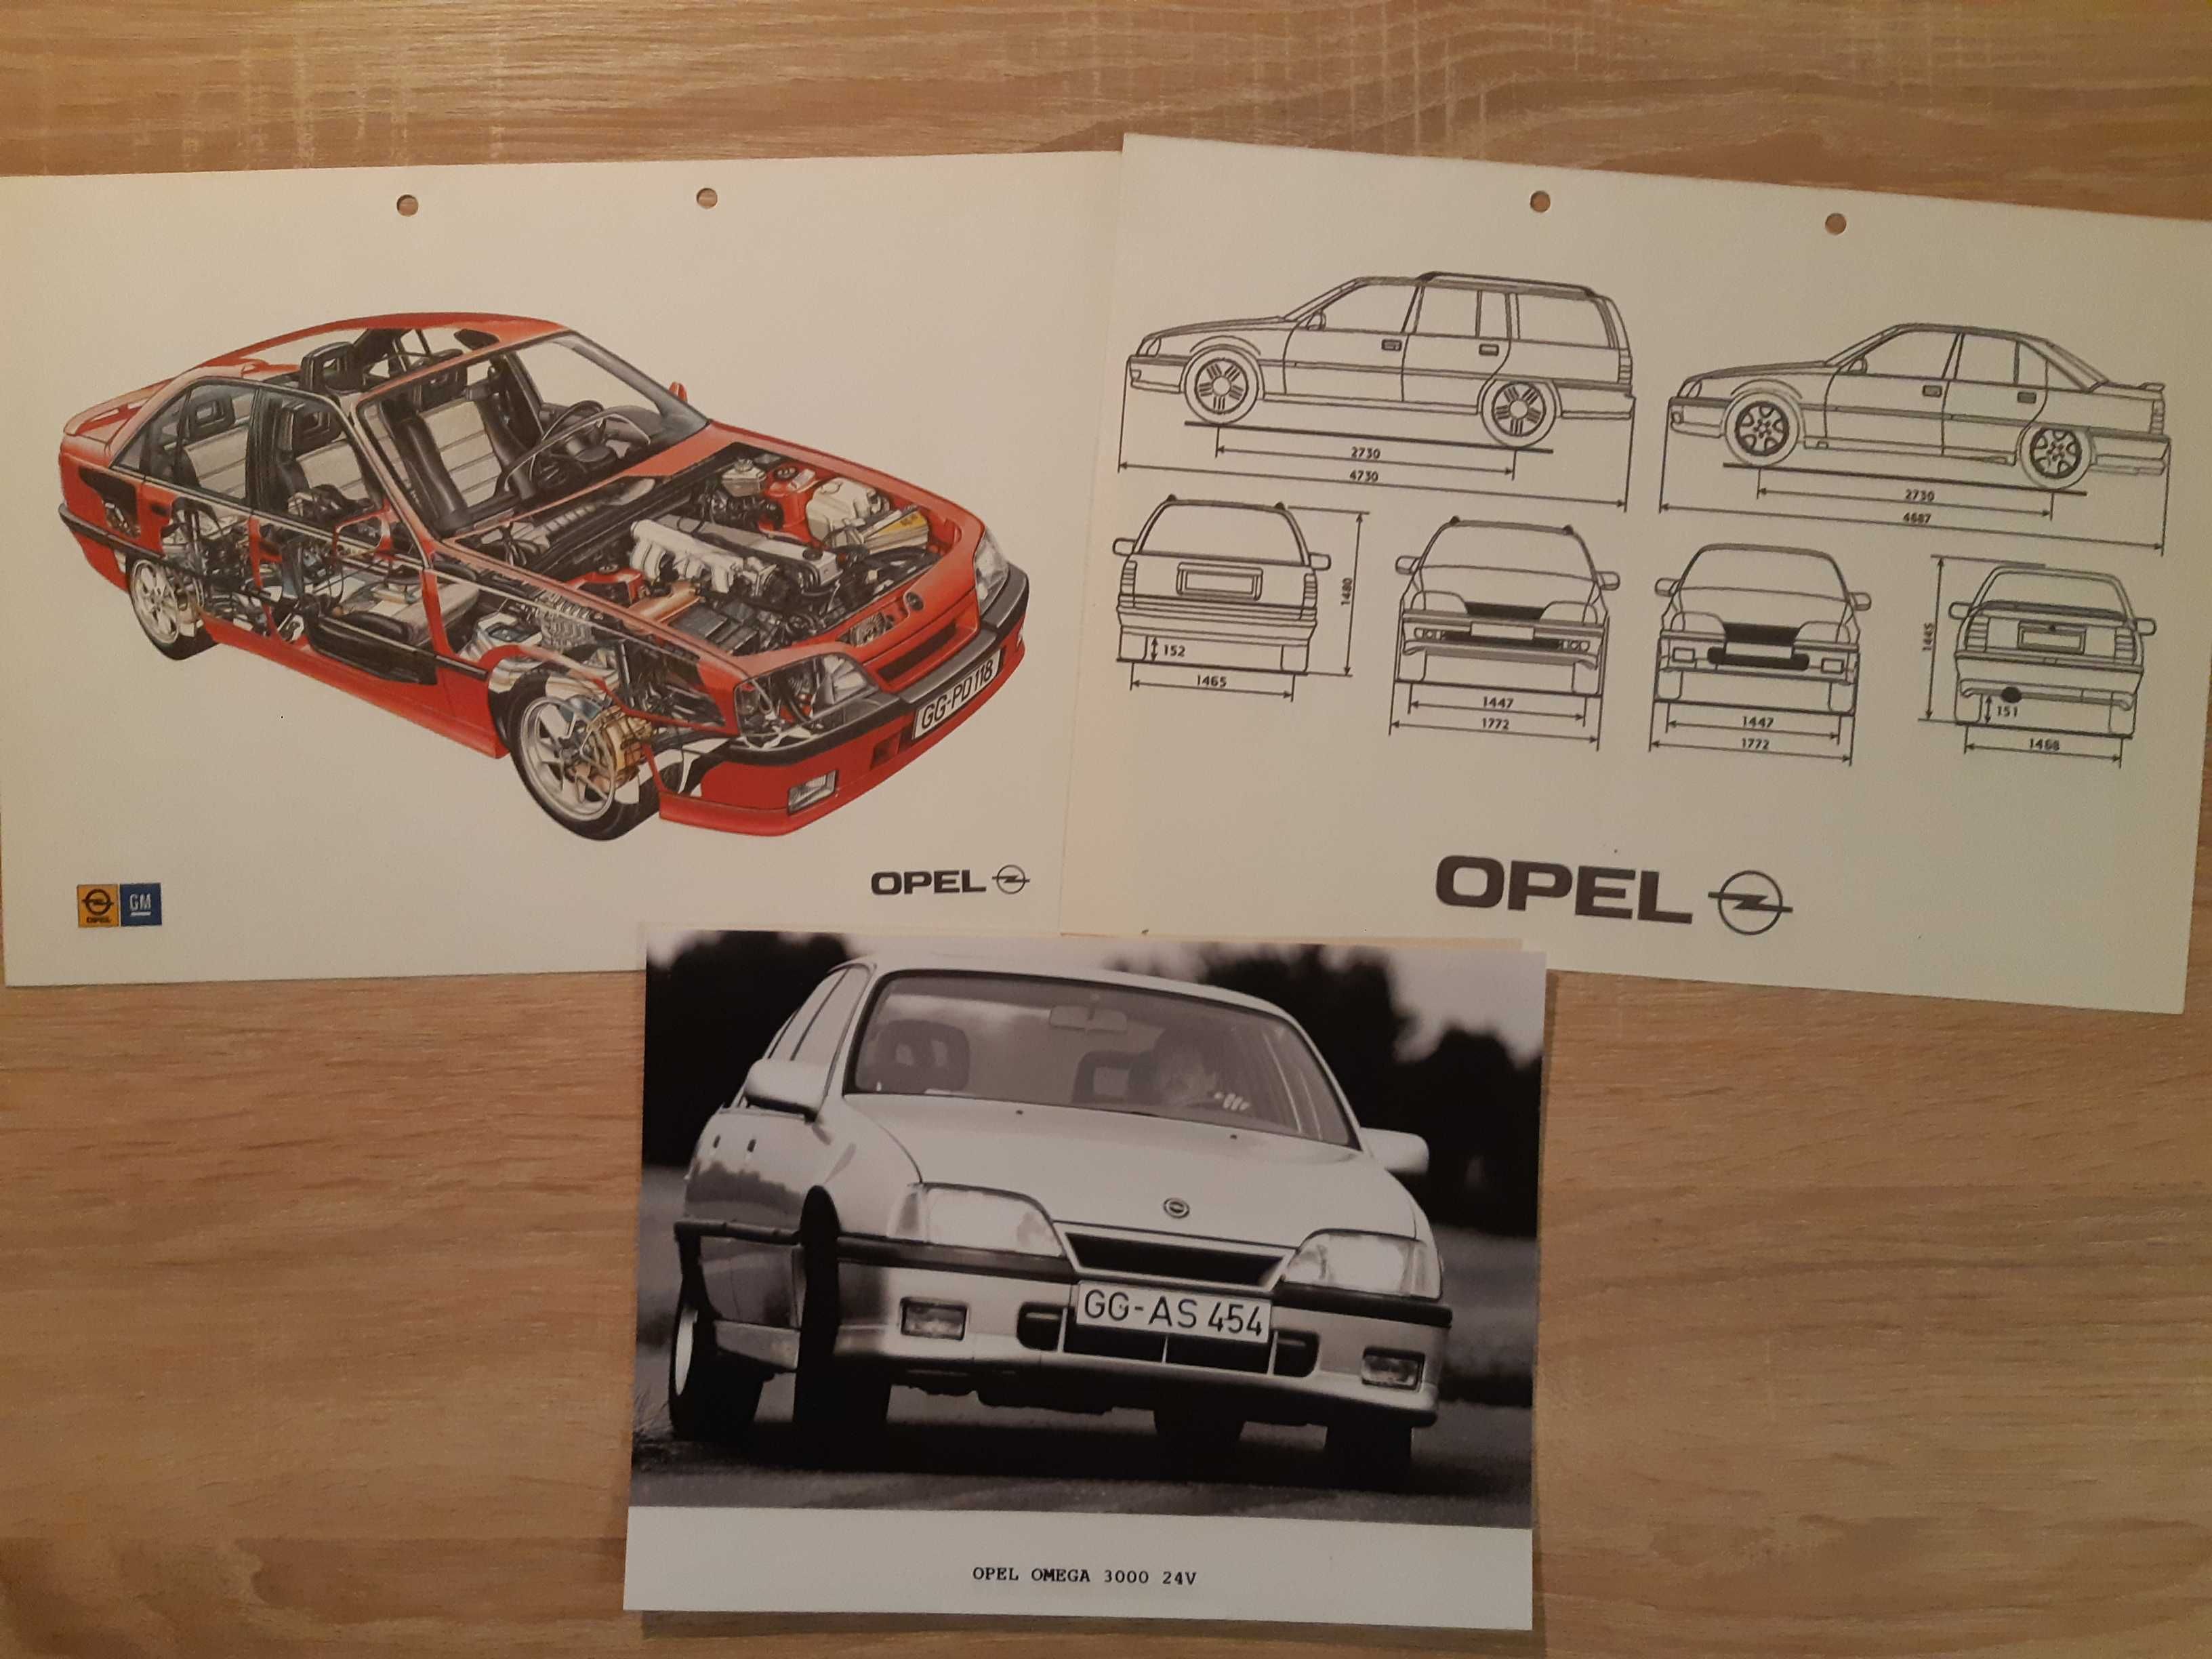 Opel Omega 3000 Zdjęcie prasowe i plansze A4 przekrój i wymiary